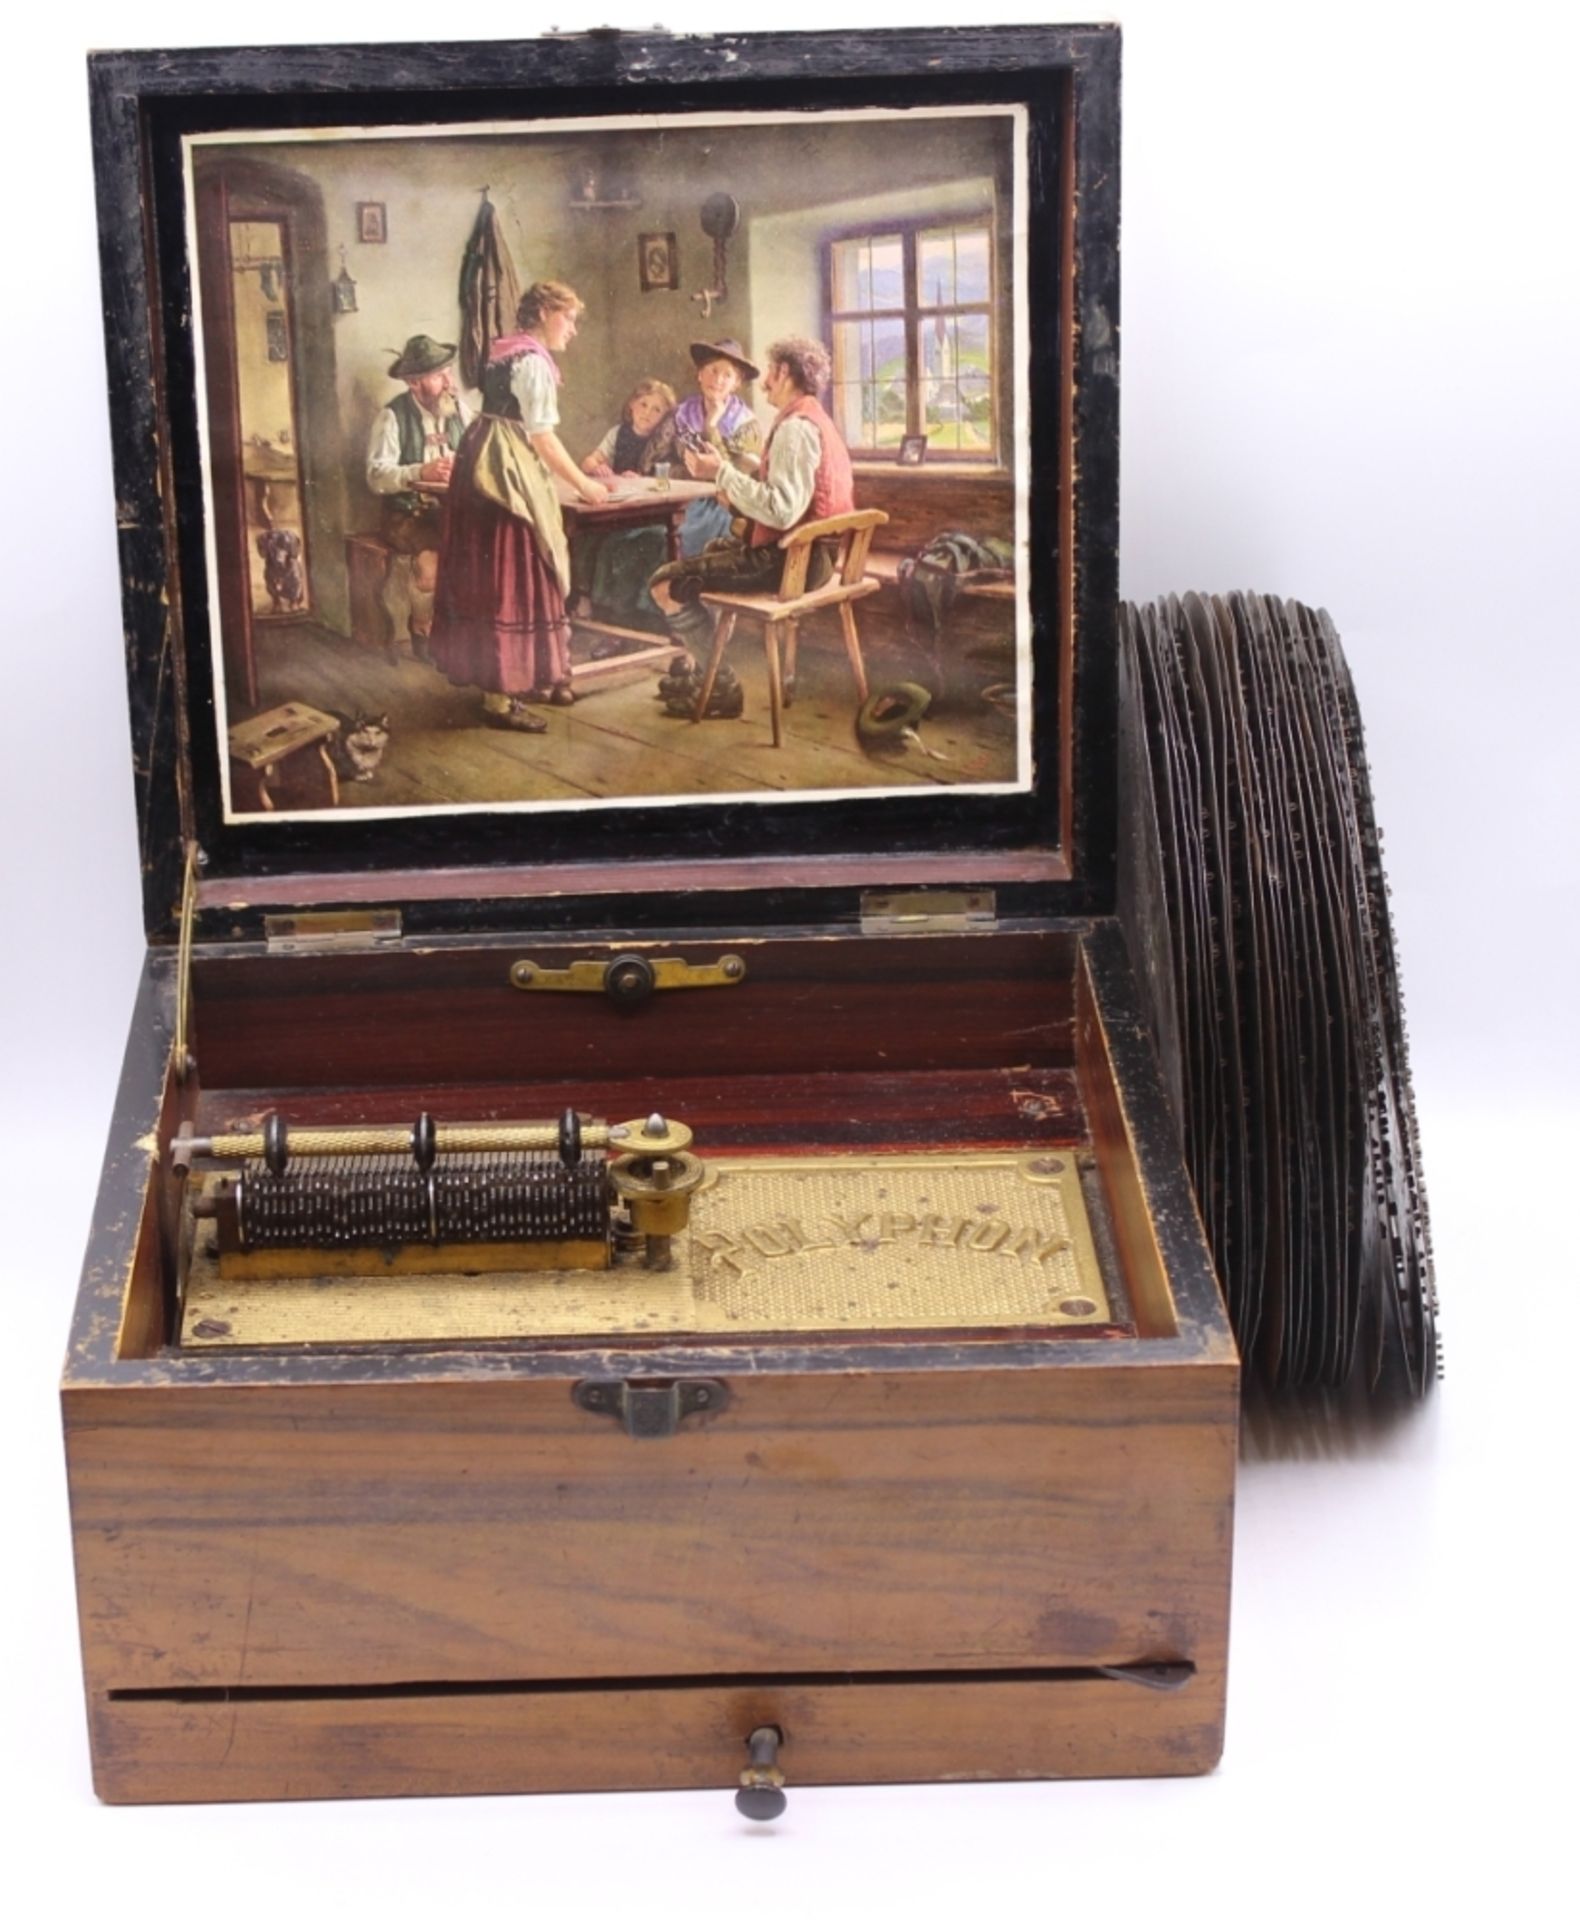 Polyphon (Musikautomat) - deutsch nach 1900 rechteckiges Holzgehäuse mit Beineinlage, mechanisches